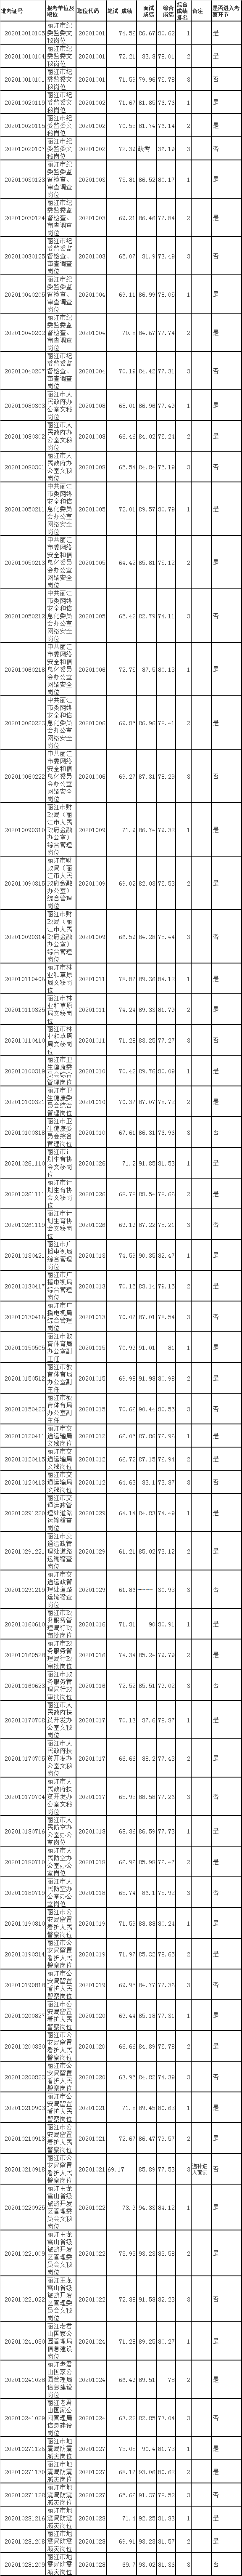 丽江市2020年市直机关公开遴选公务员（参公管理人员）综合成绩.png